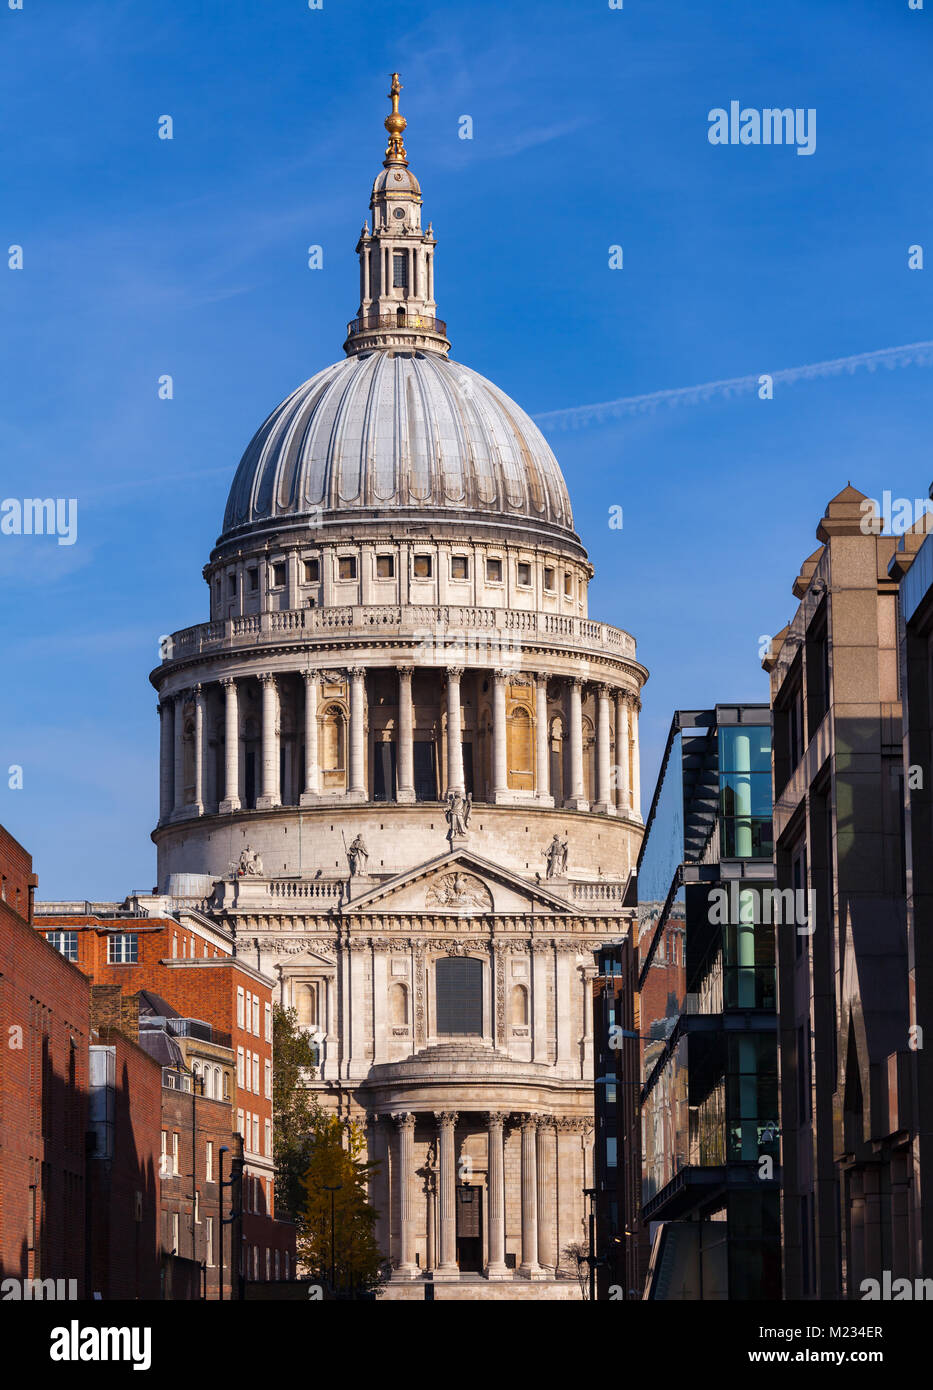 Londoner Stadtbild mit St Paul's Kathedrale, eines der berühmtesten und bekanntesten Sehenswürdigkeiten von London Stockfoto